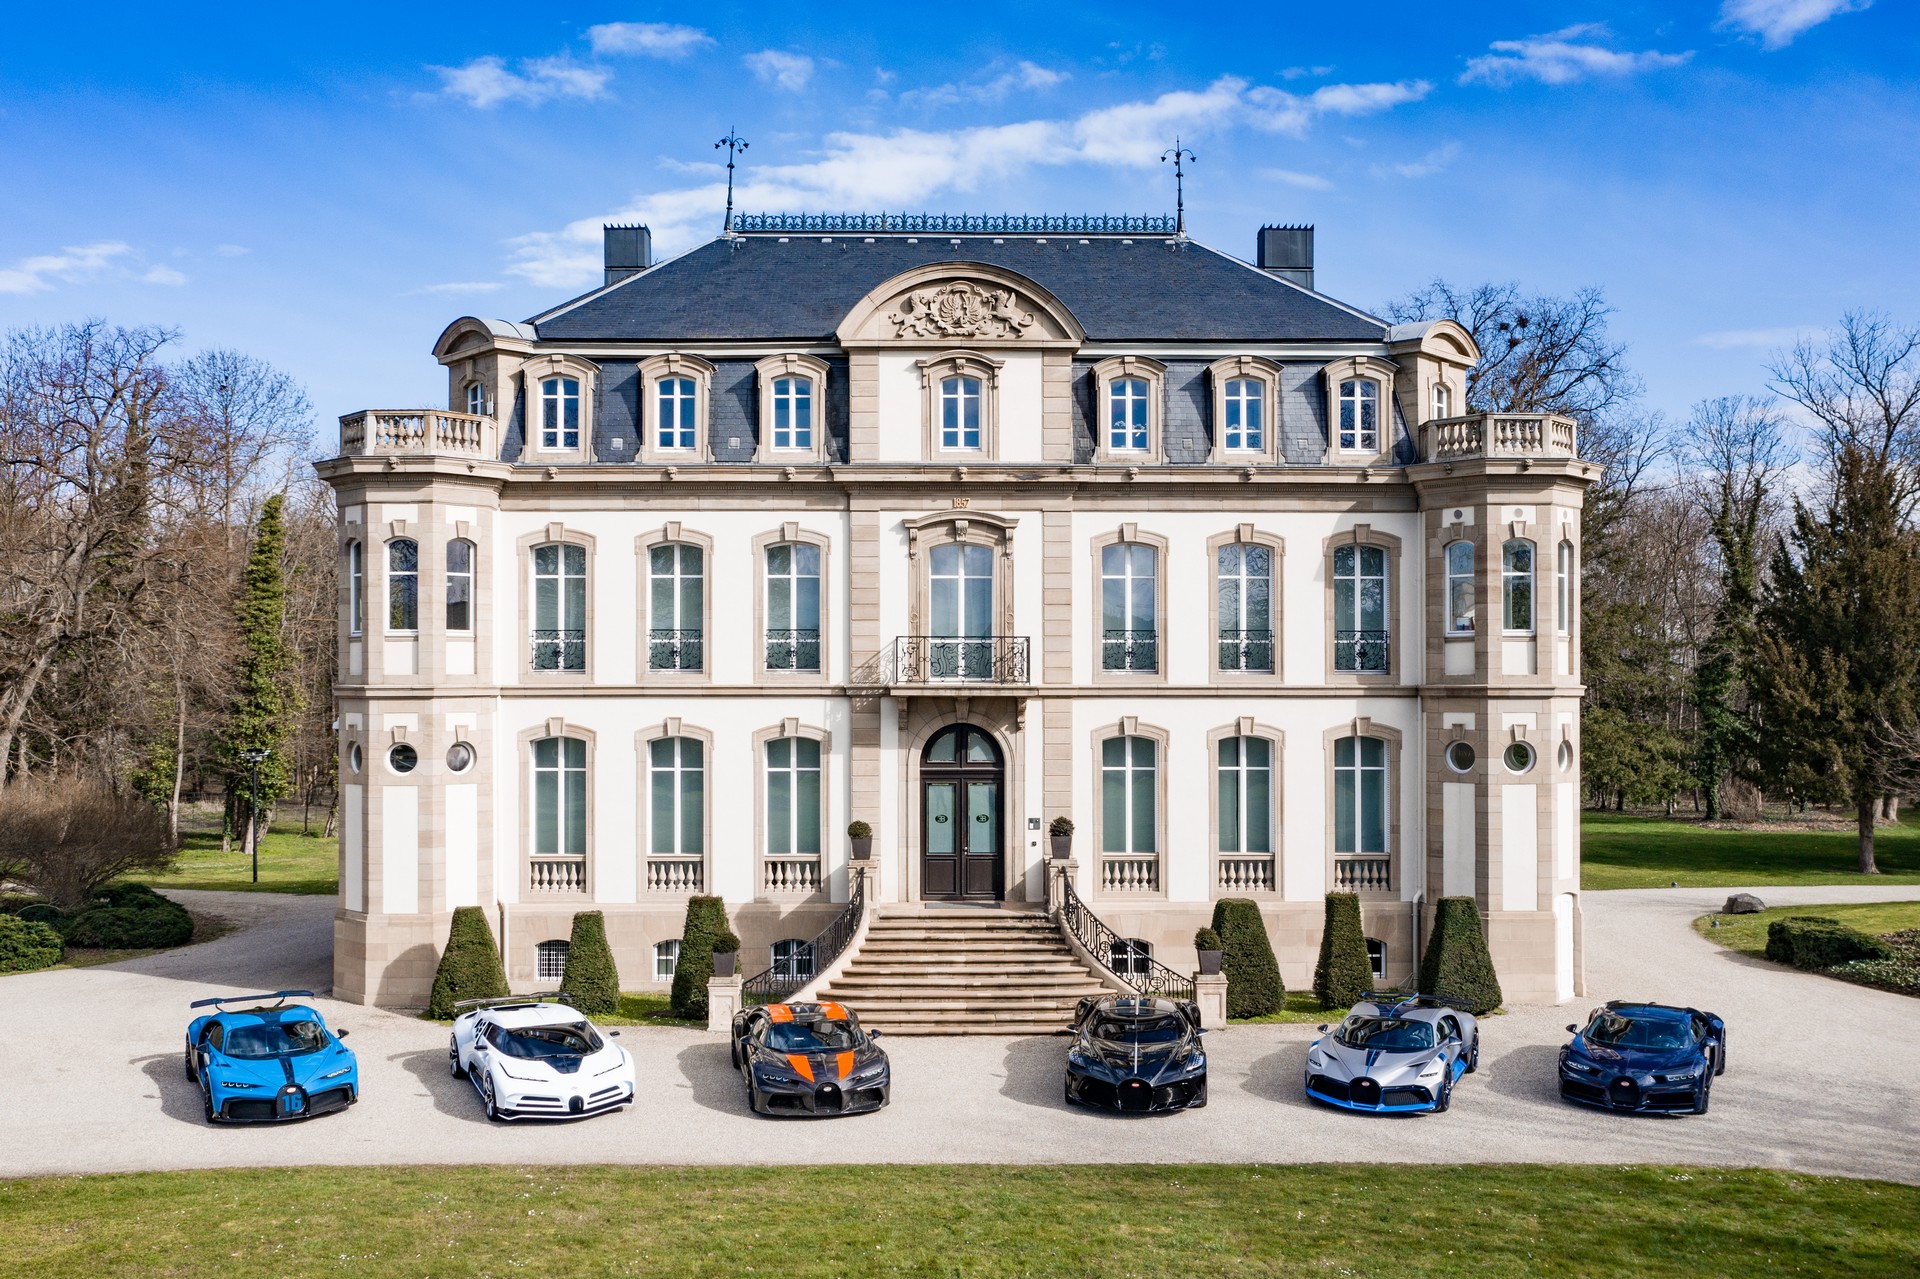 Choáng ngợp trước dàn Bugatti với toàn siêu phẩm quý hiếm trị giá hàng trăm triệu USD tụ họp - Ảnh 1.